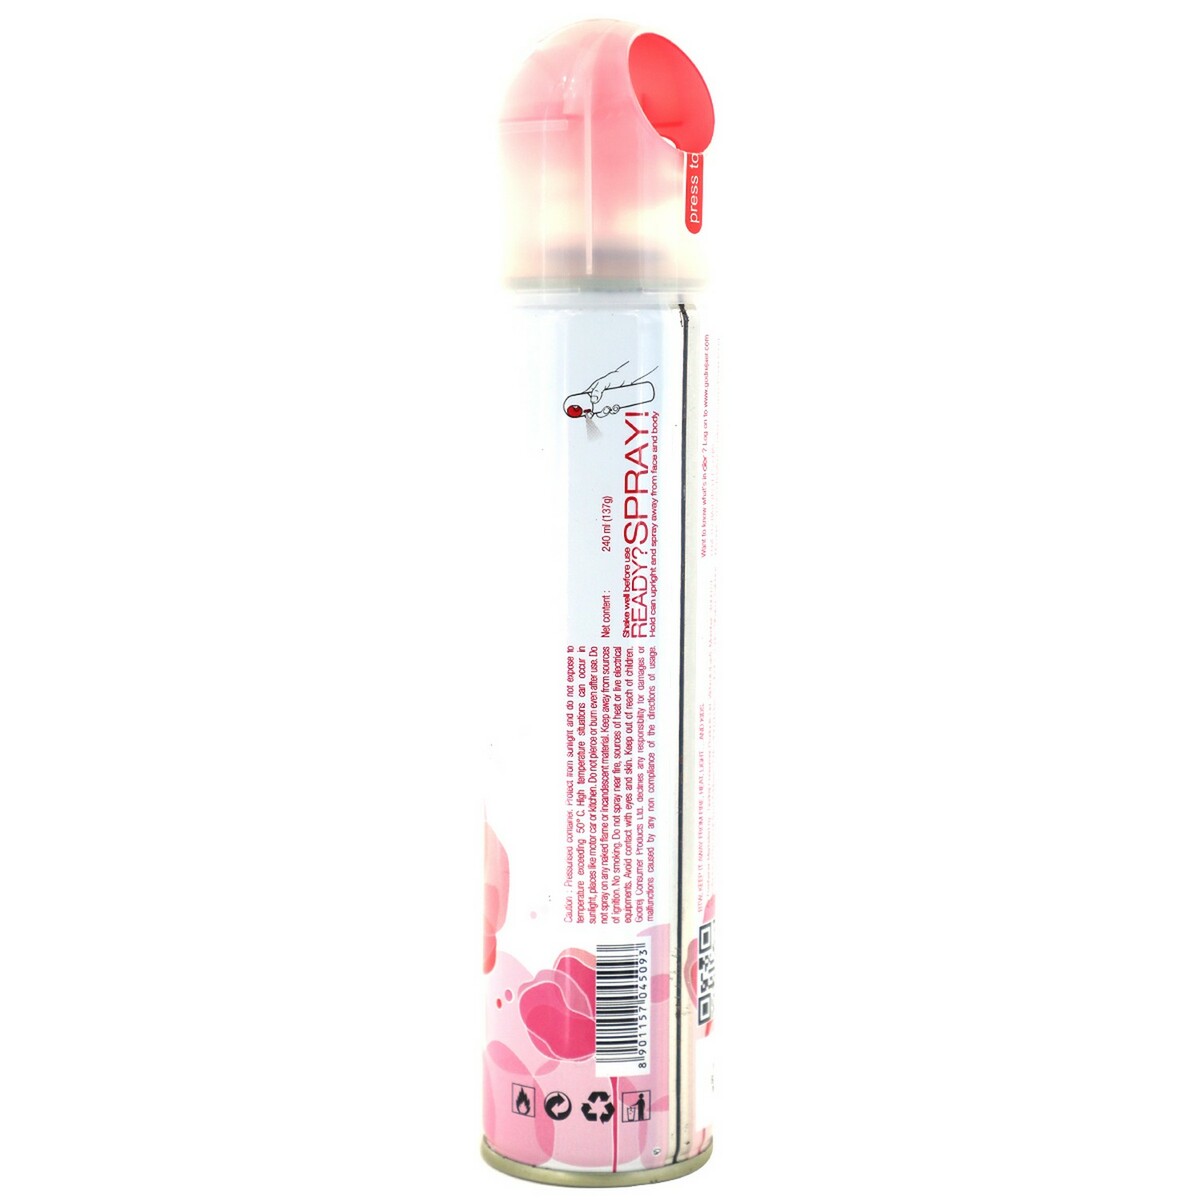 Godrej Aer Spray Air Freshener- Petal Crush Pink 220 ml